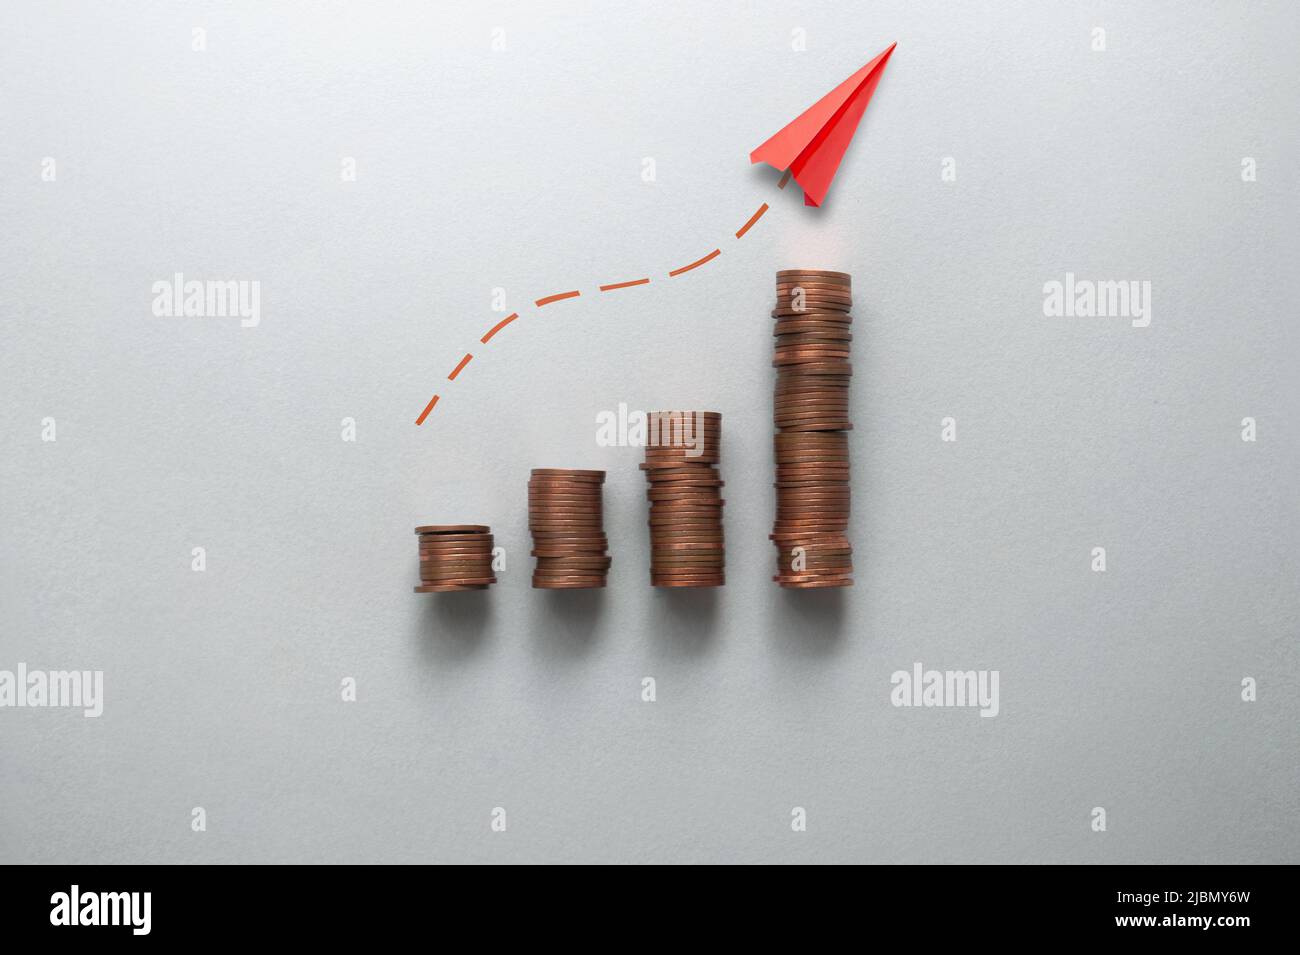 Concepto de aumento de la inflación, los costes y los precios, gráfico de negocios pilas de monedas con el papel de avión que se mueve hacia arriba Foto de stock